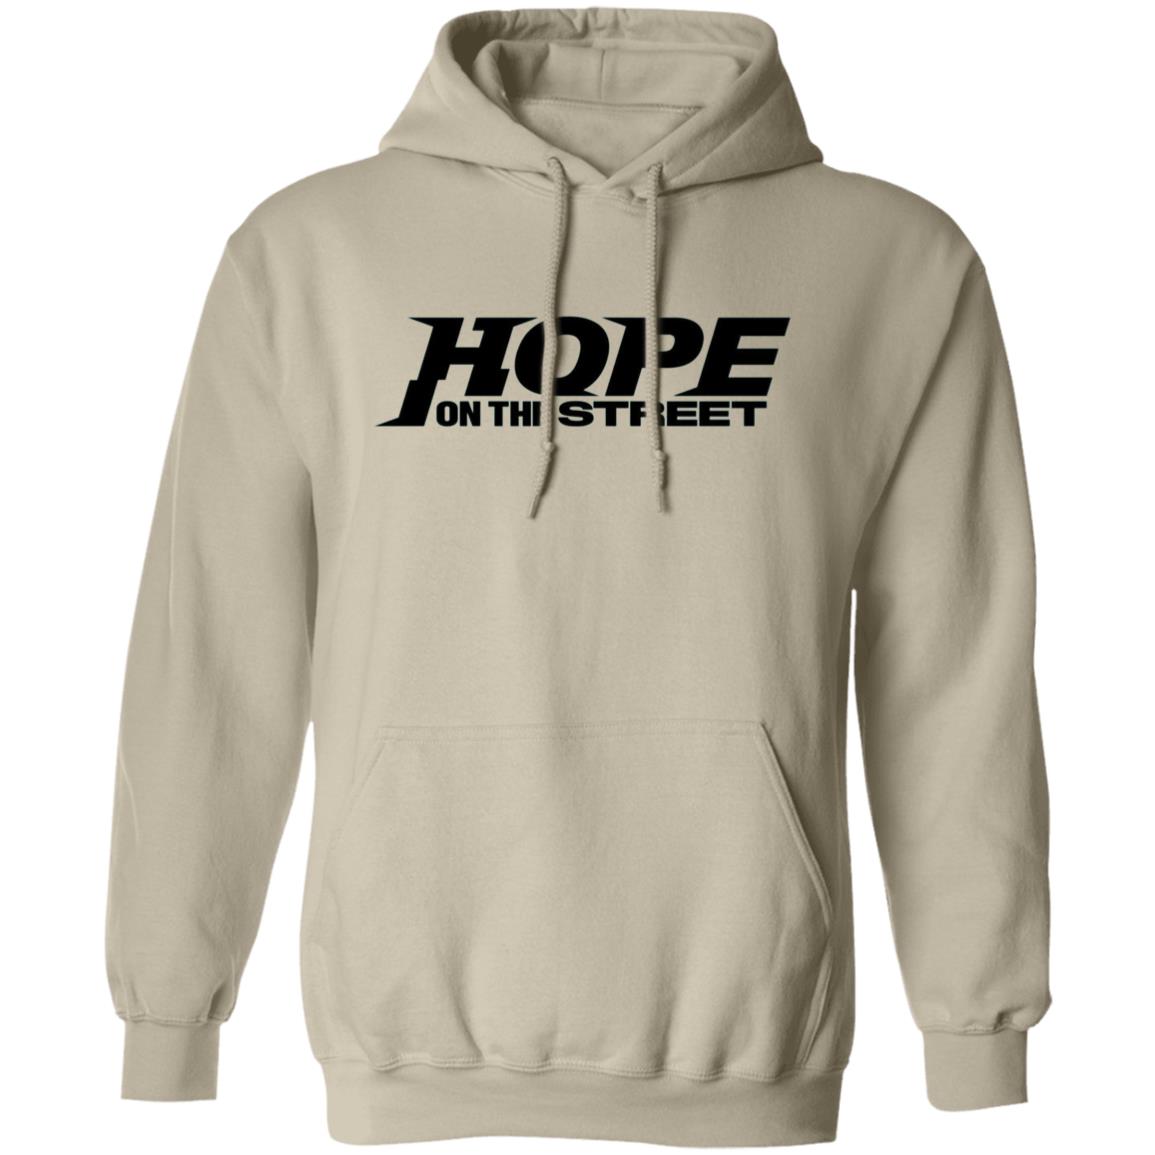 J-Hope Hope on the Street Hoodie